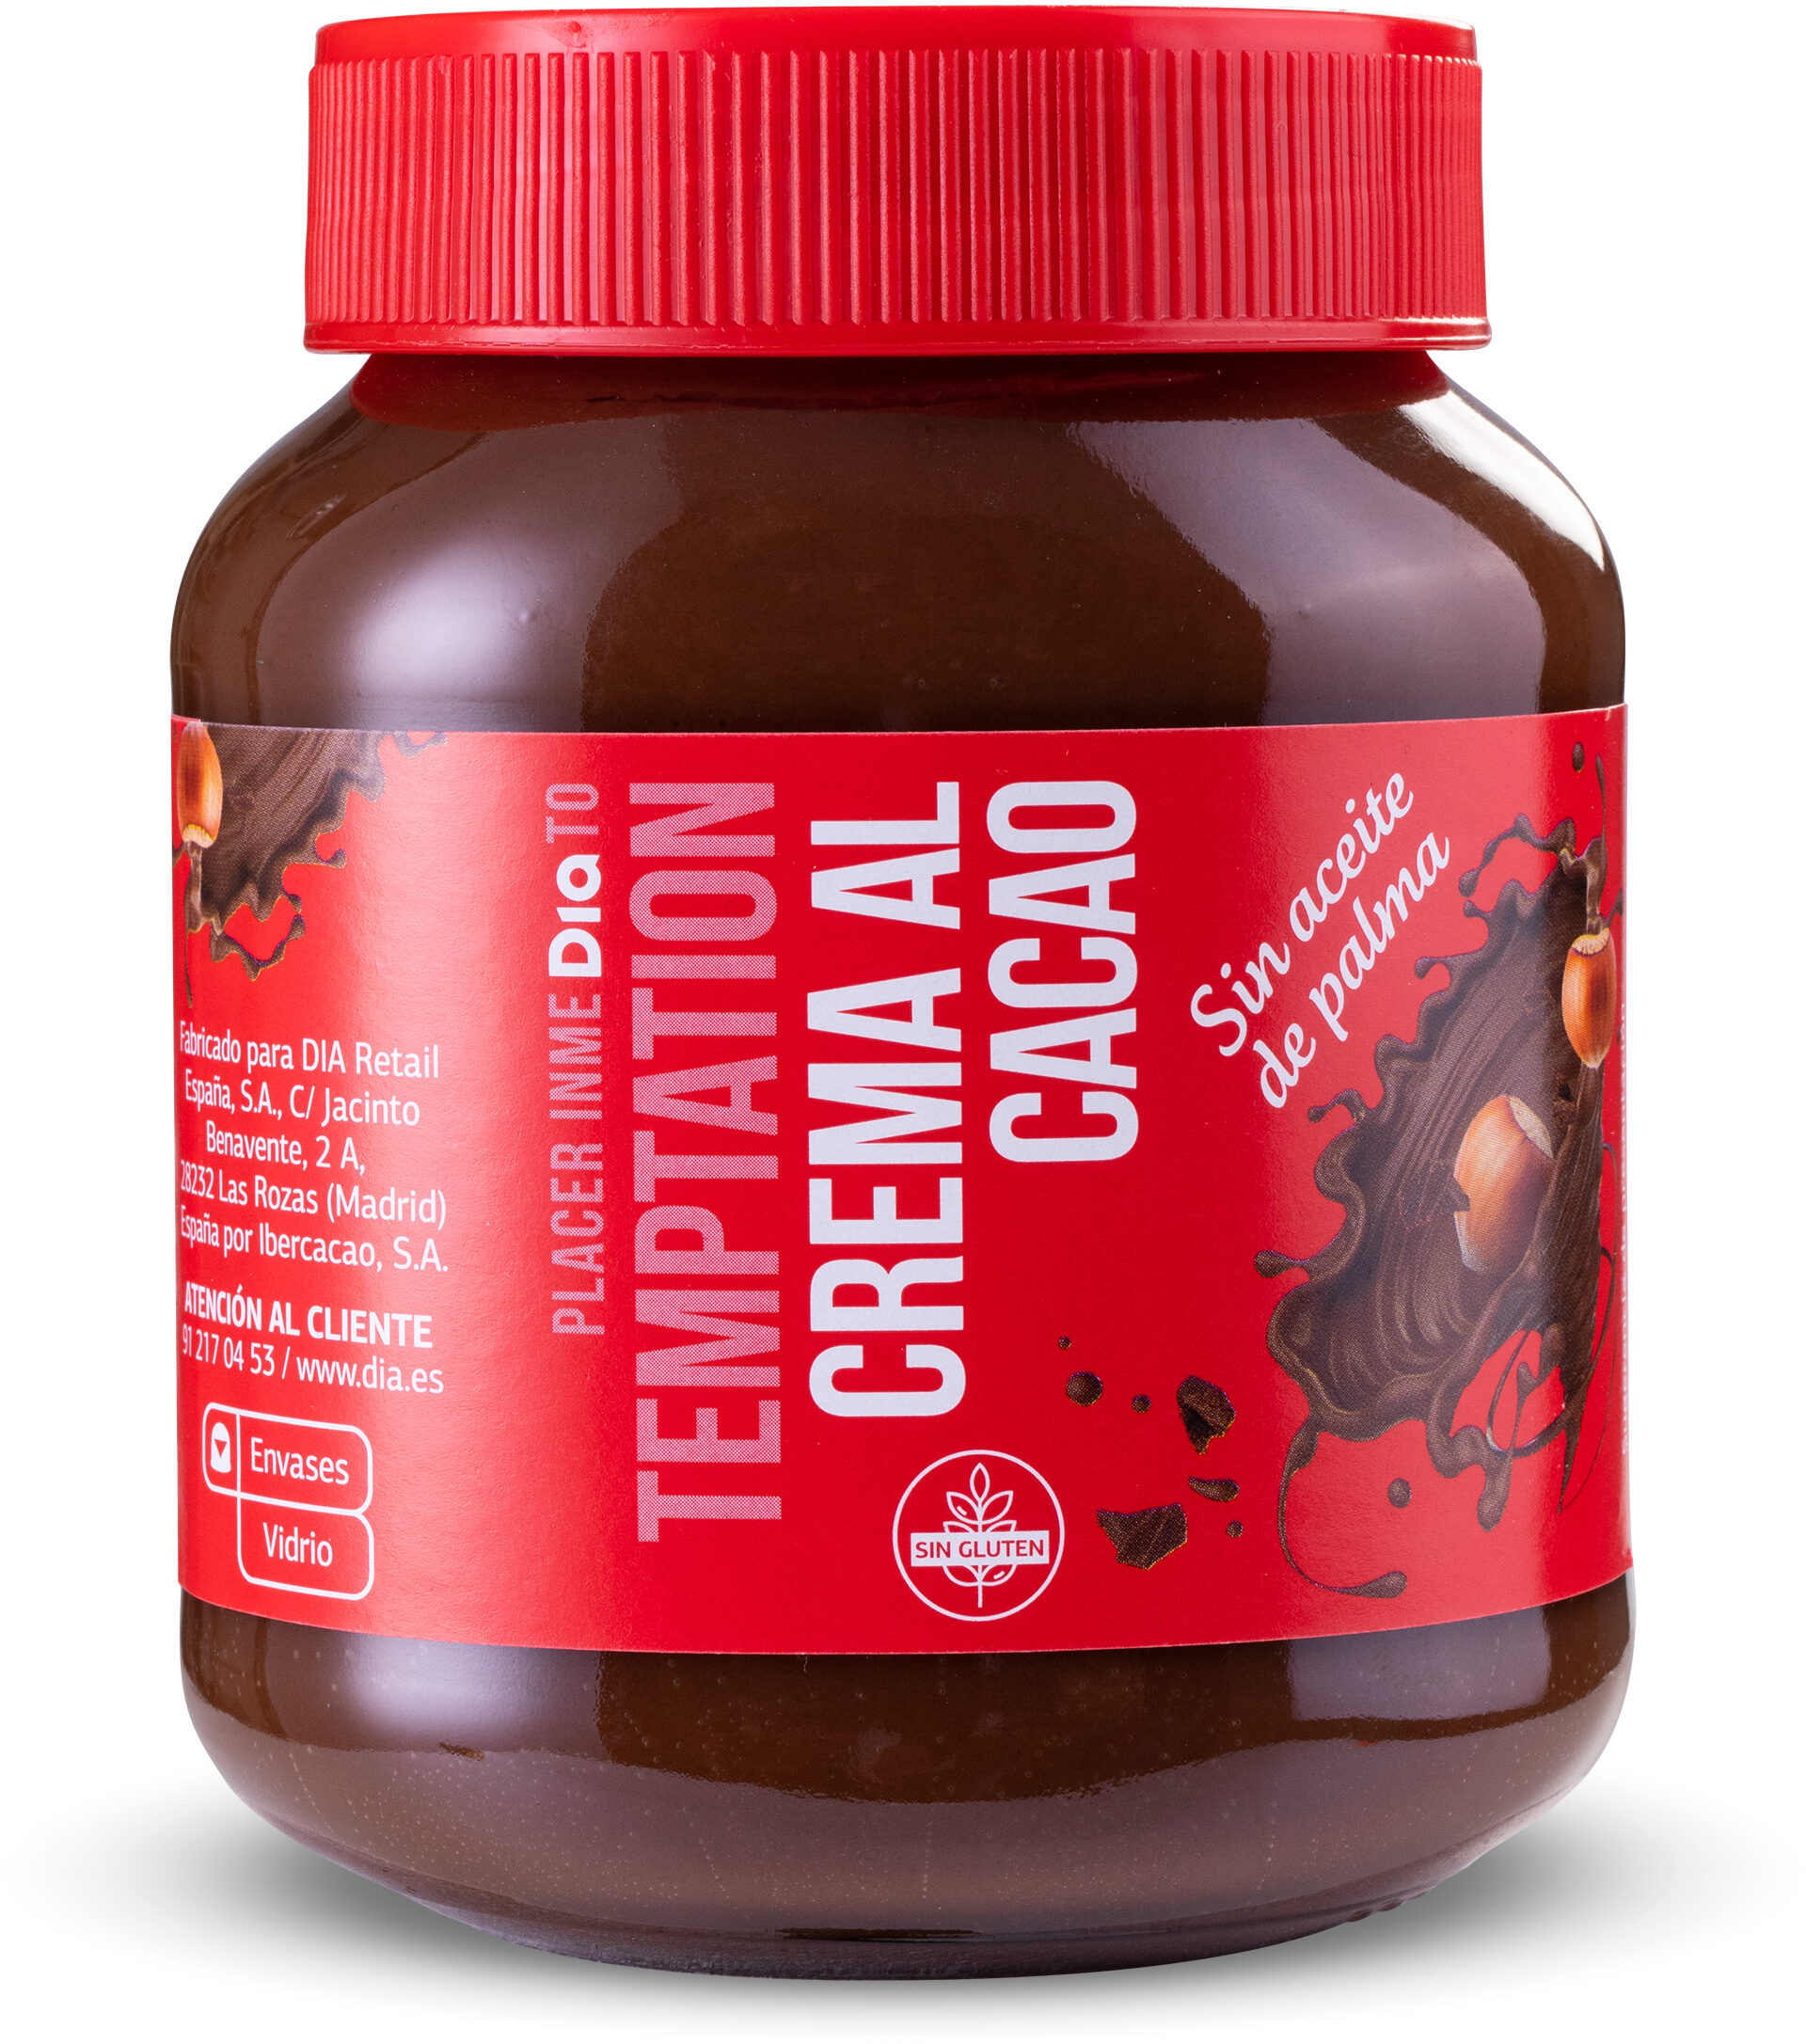 Crema al cacao con avellanas - Producte - fr